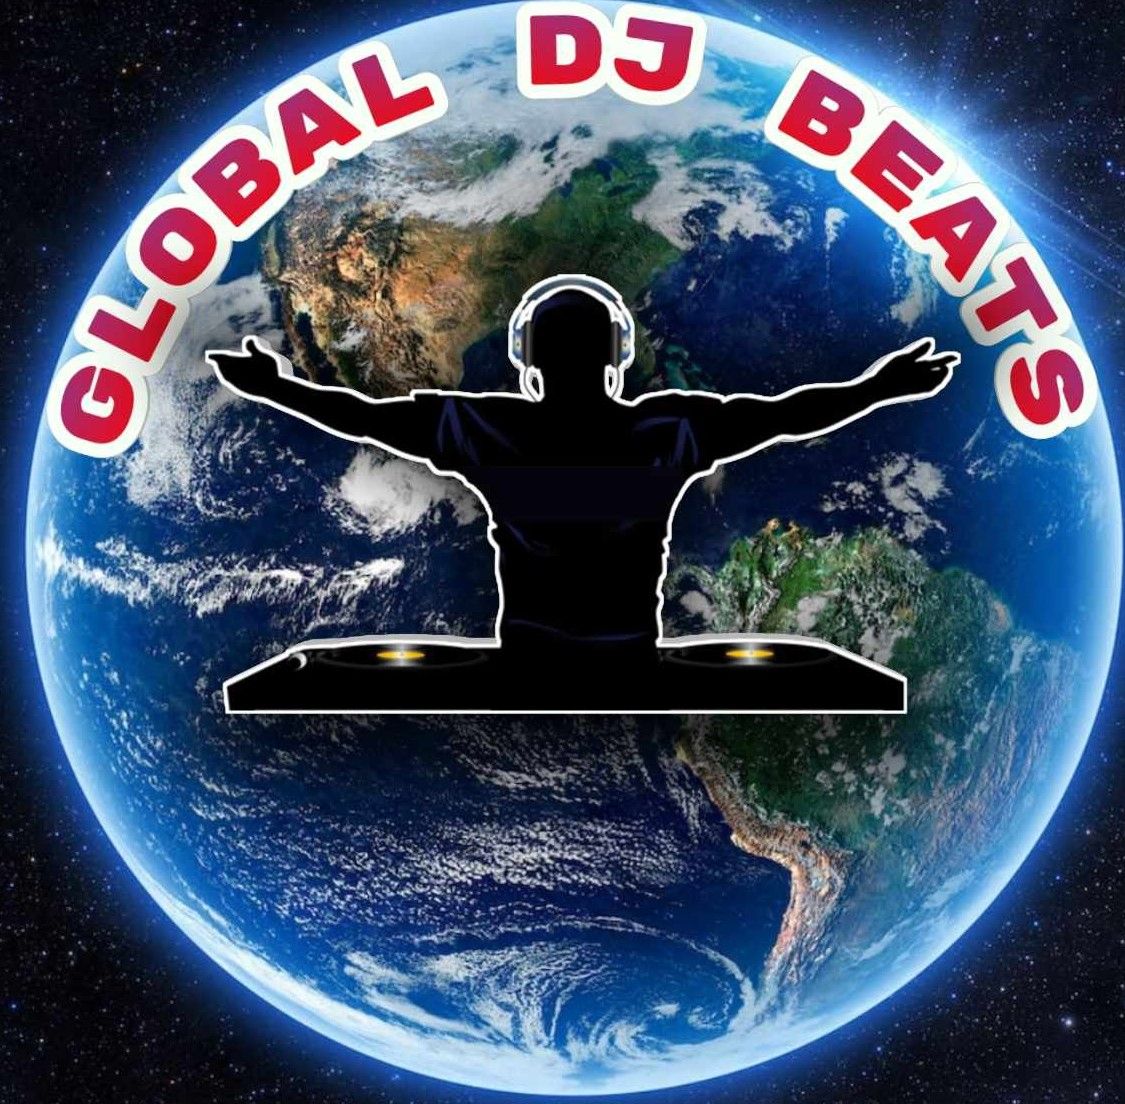 GLOBAL DJ BEATS VOL 6